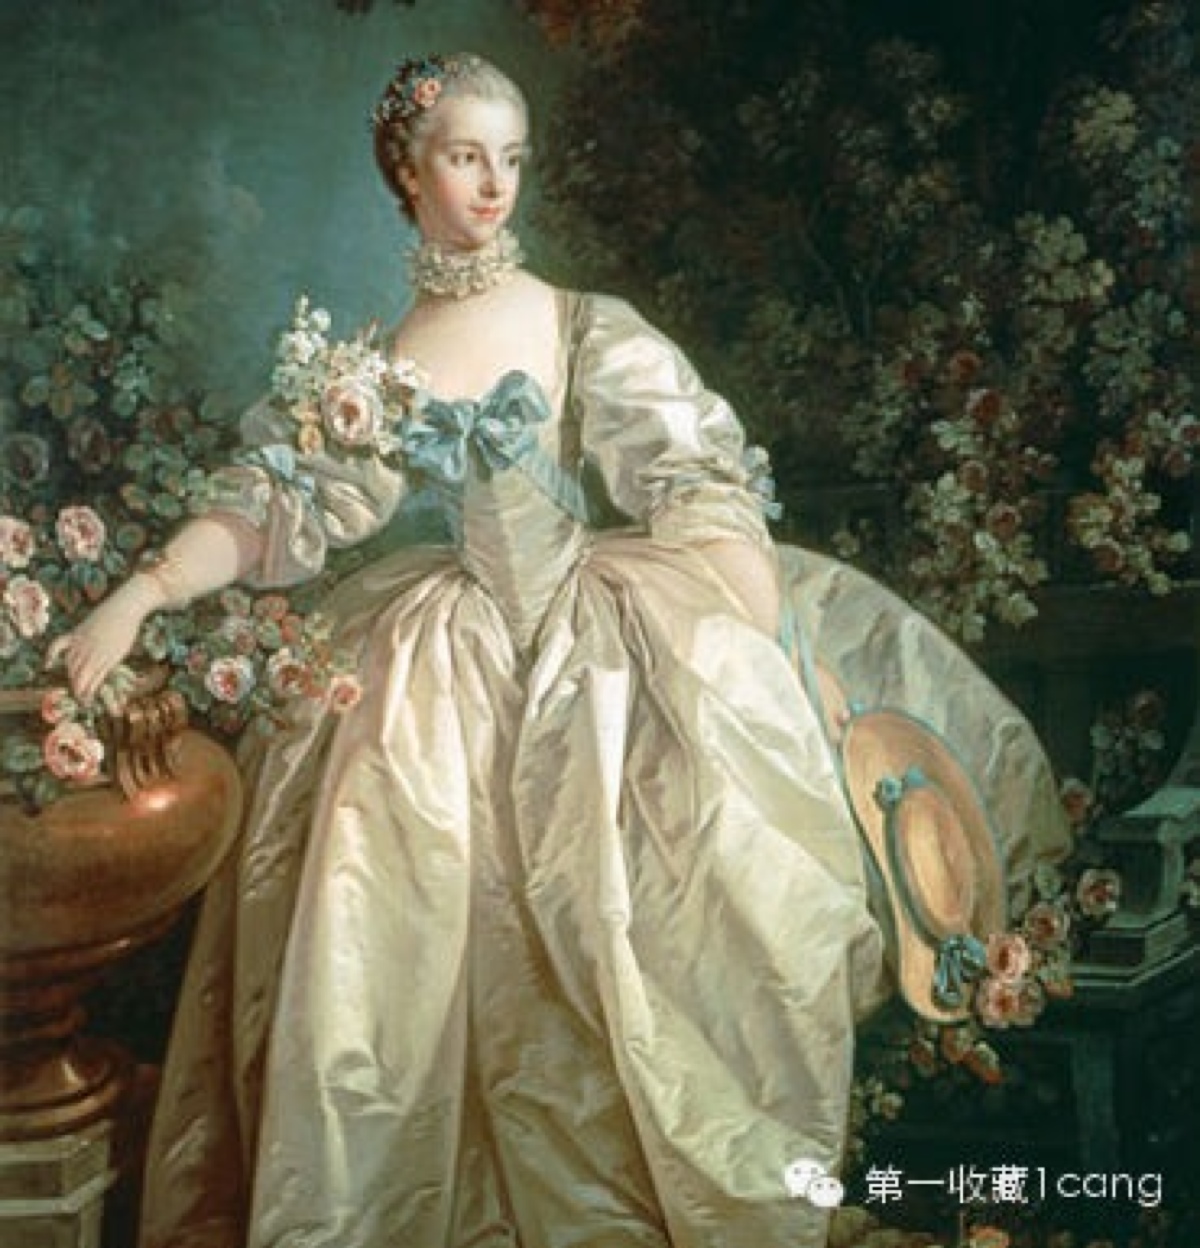 路易十五的情妇蓬帕杜尔夫人是洛可可风尚的主导者和推动者,将精致